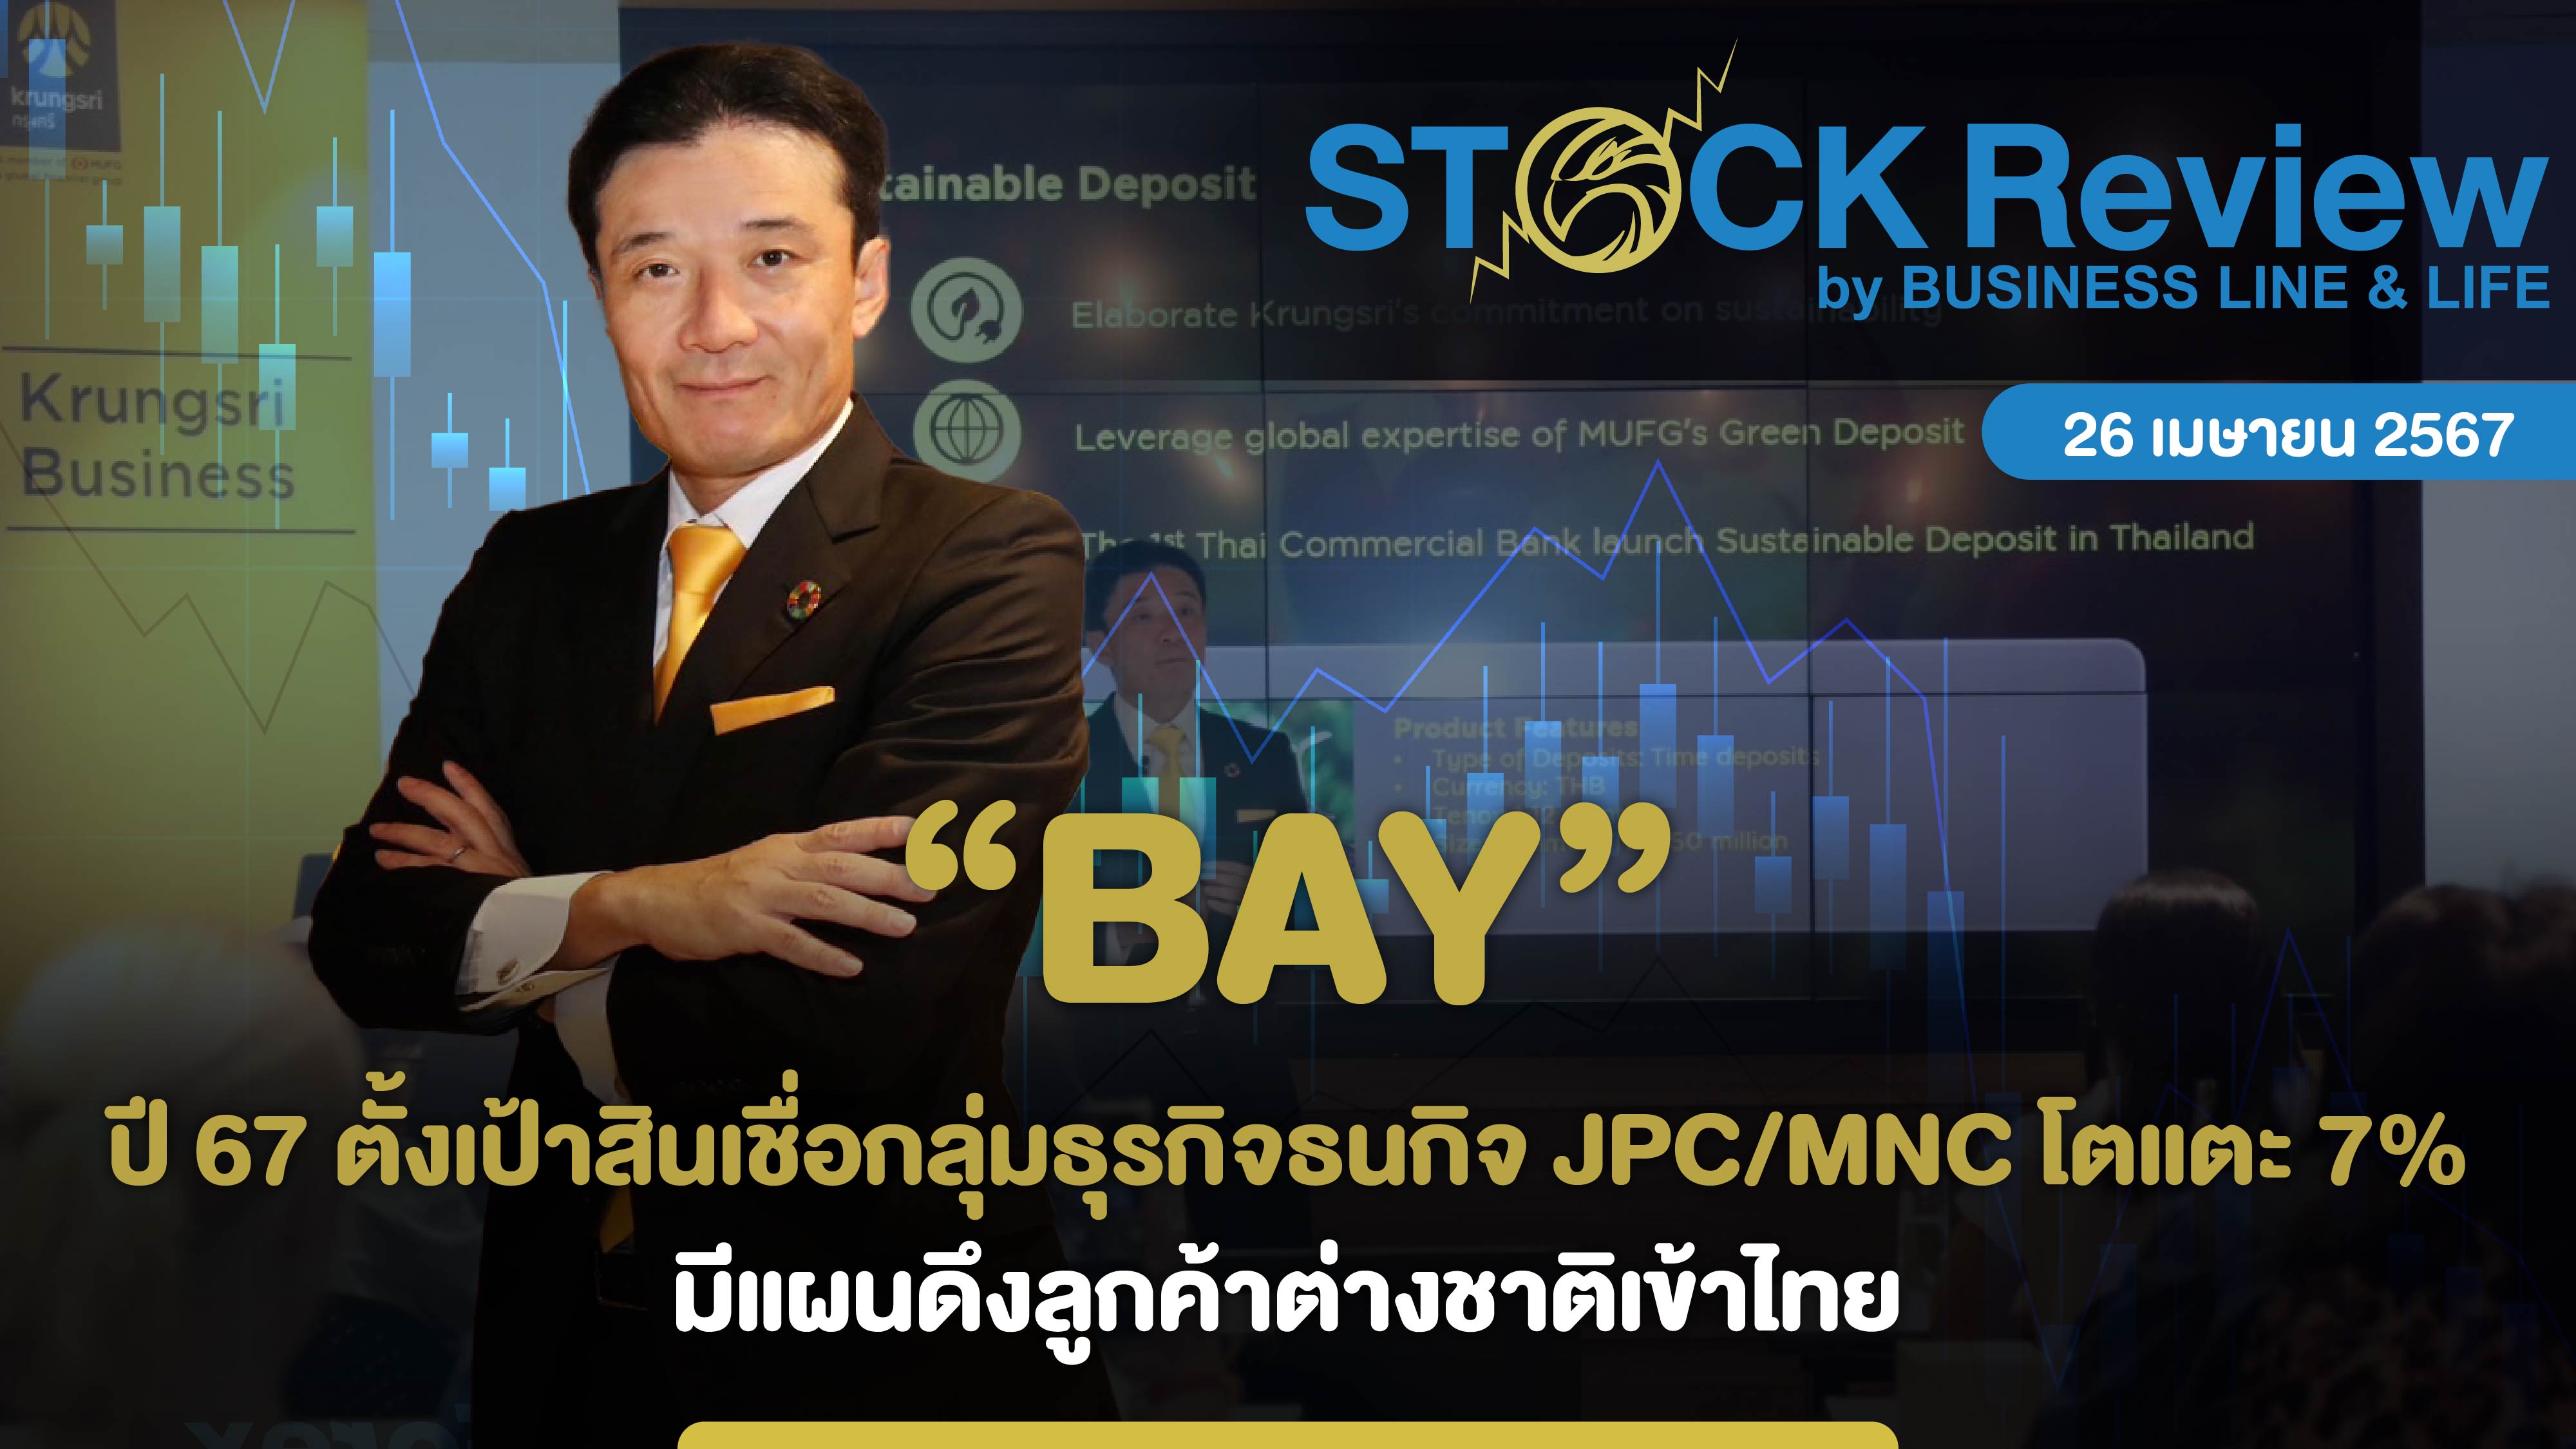 BAY ปี 67 ตั้งเป้าสินเชื่อกลุ่มธุรกิจธนกิจ JPC/MNC เติบโตแตะ 7% มีแผนดึงลูกค้าต่างชาติเข้าไทย